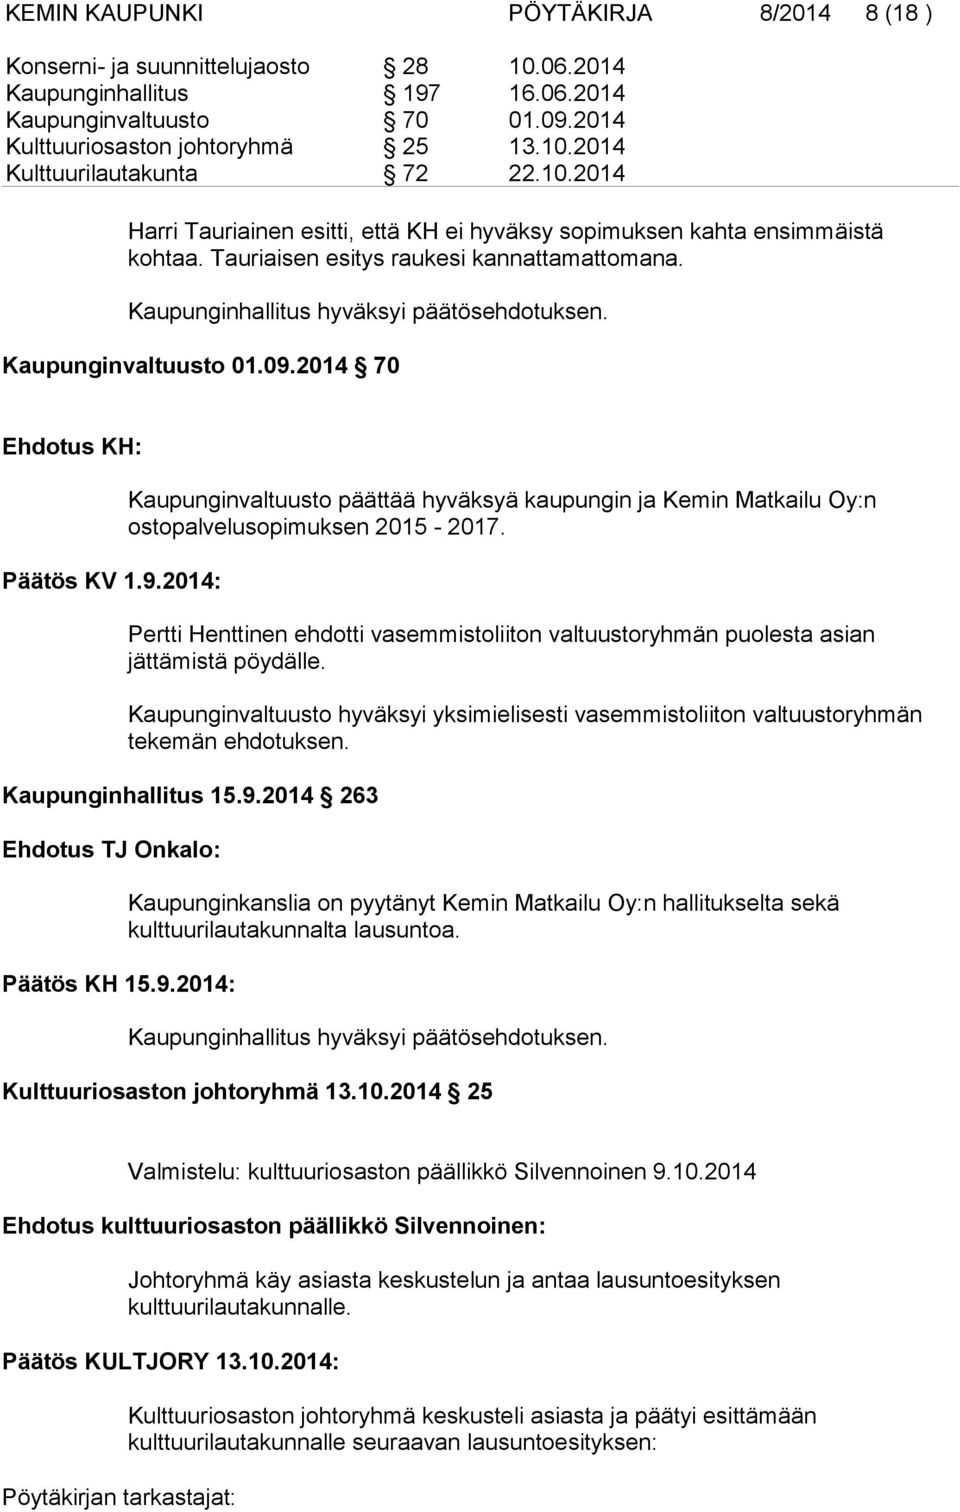 Kaupunginvaltuusto 01.09.2014 70 Ehdotus KH: Päätös KV 1.9.2014: Kaupunginvaltuusto päättää hyväksyä kaupungin ja Kemin Matkailu Oy:n ostopalvelusopimuksen 2015-2017.